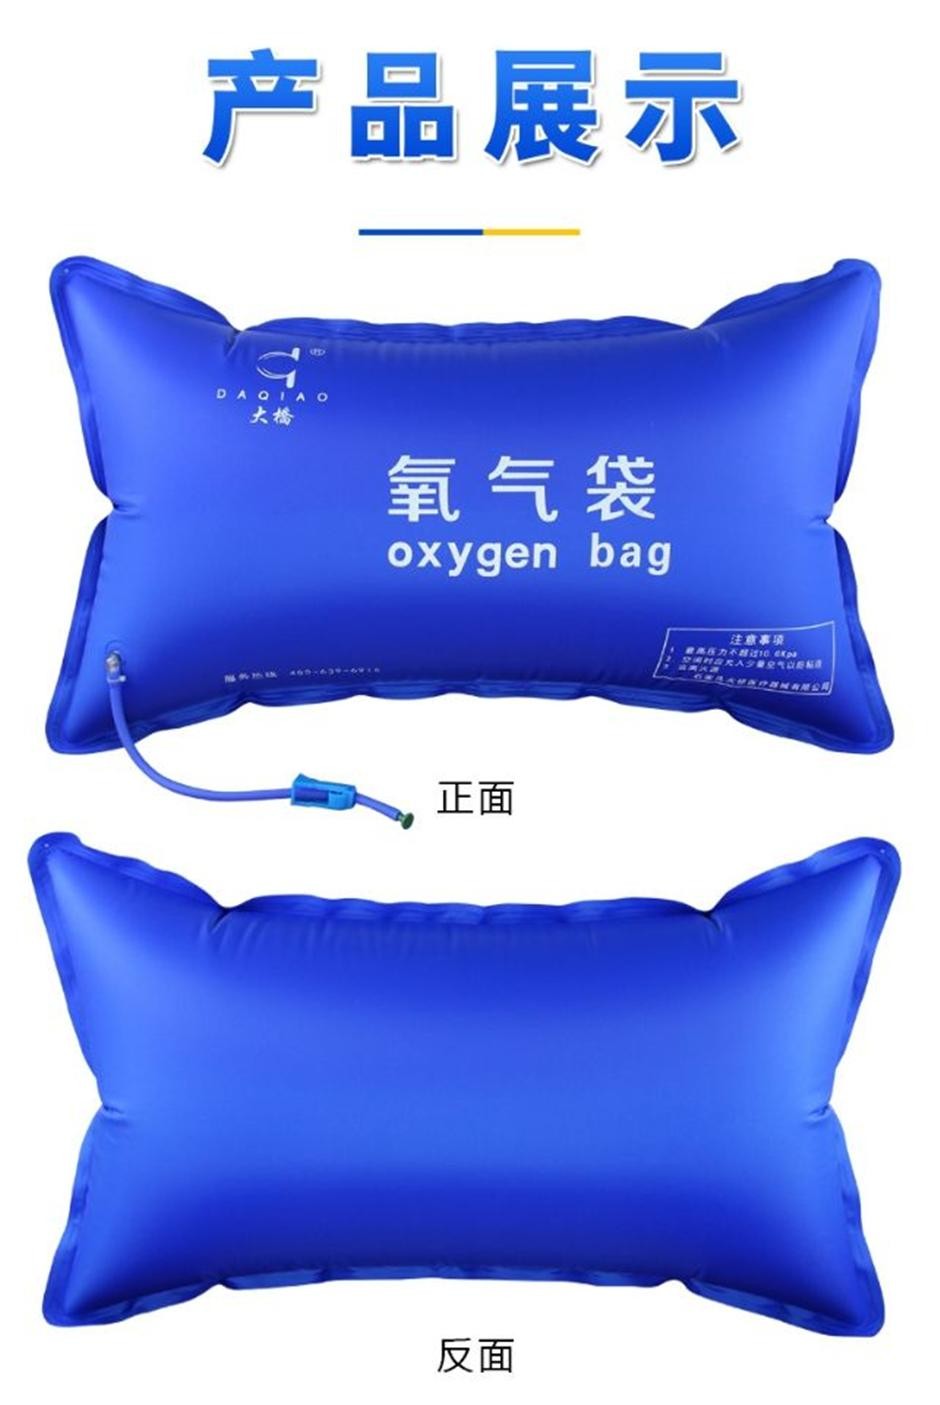 大桥氧气袋便携式吸氧包42l大容量老人家用孕妇吸氧袋高原氧气枕 42l